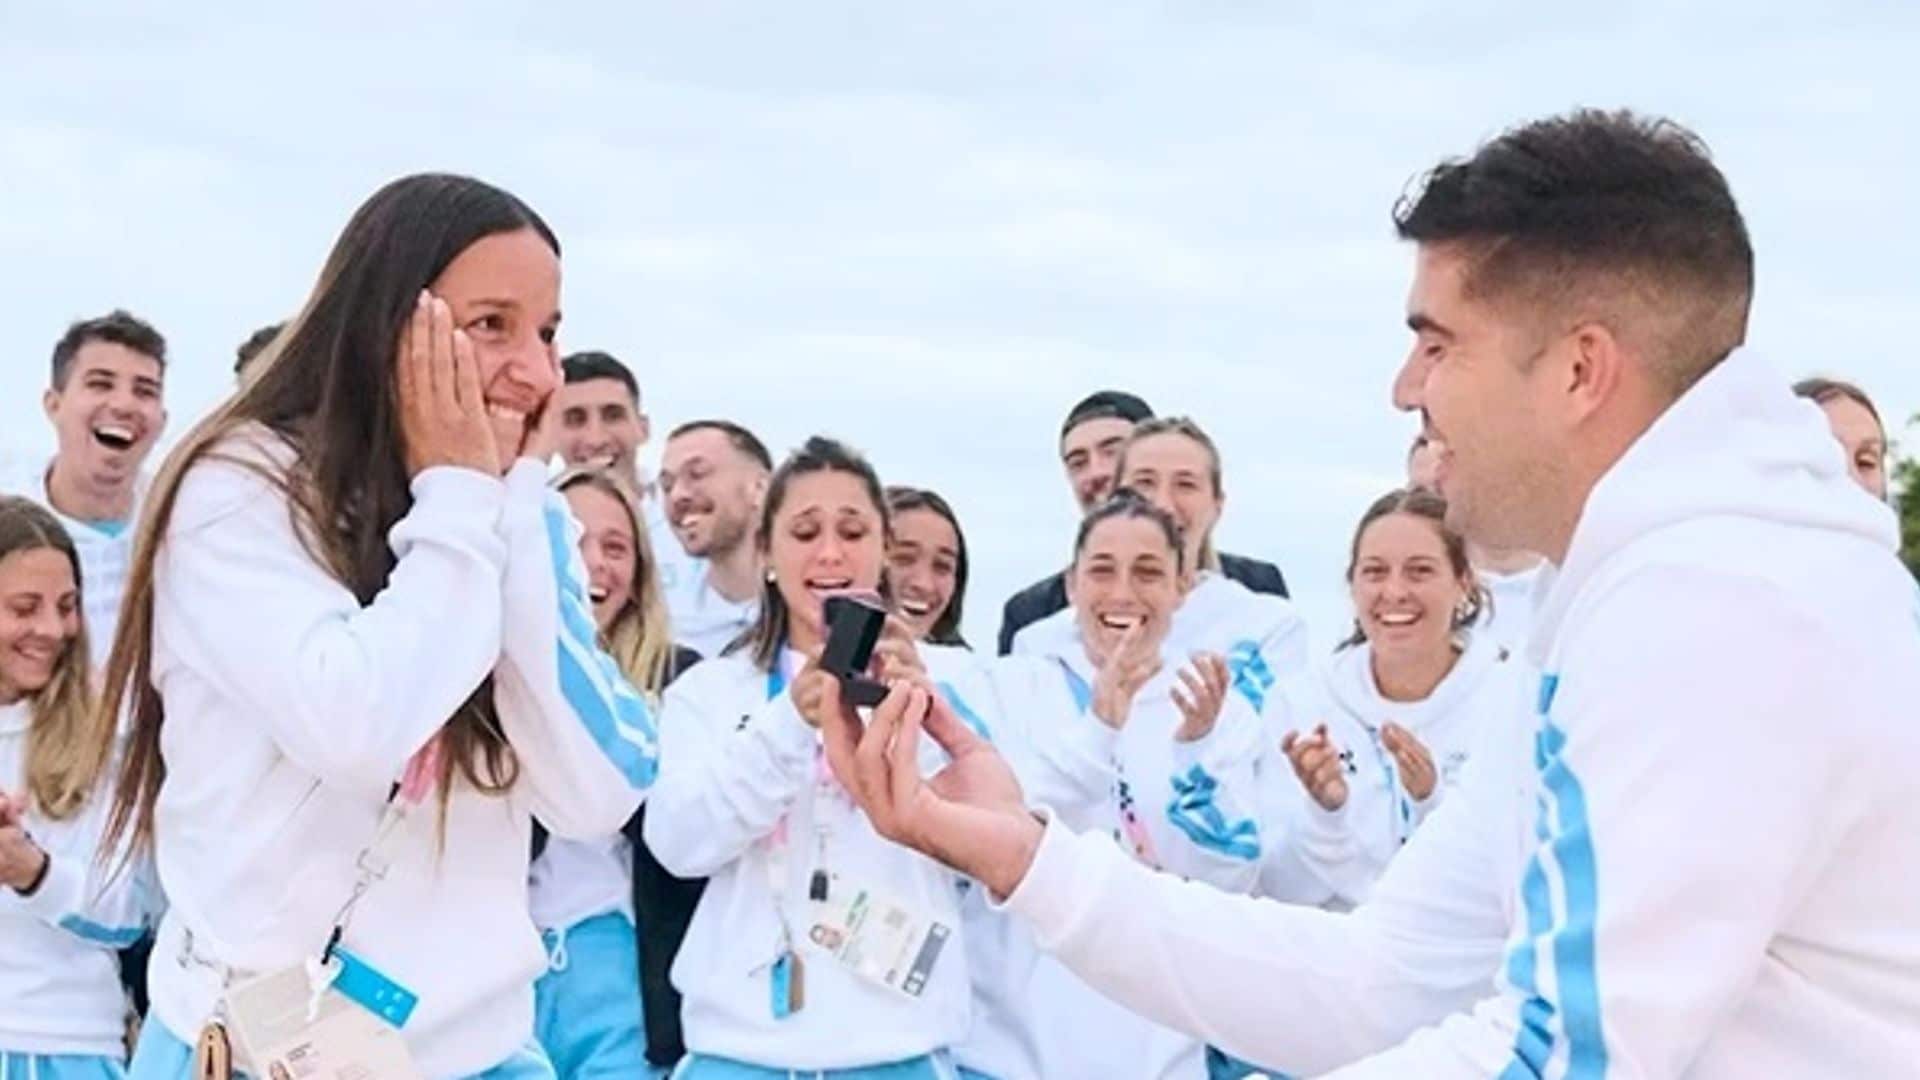 ¡Pedida de mano en la Villa Olímpica! El argentino Pablo Simonet le pide matrimonio a su novia, Pilar Campoy, de esta forma tan romántica